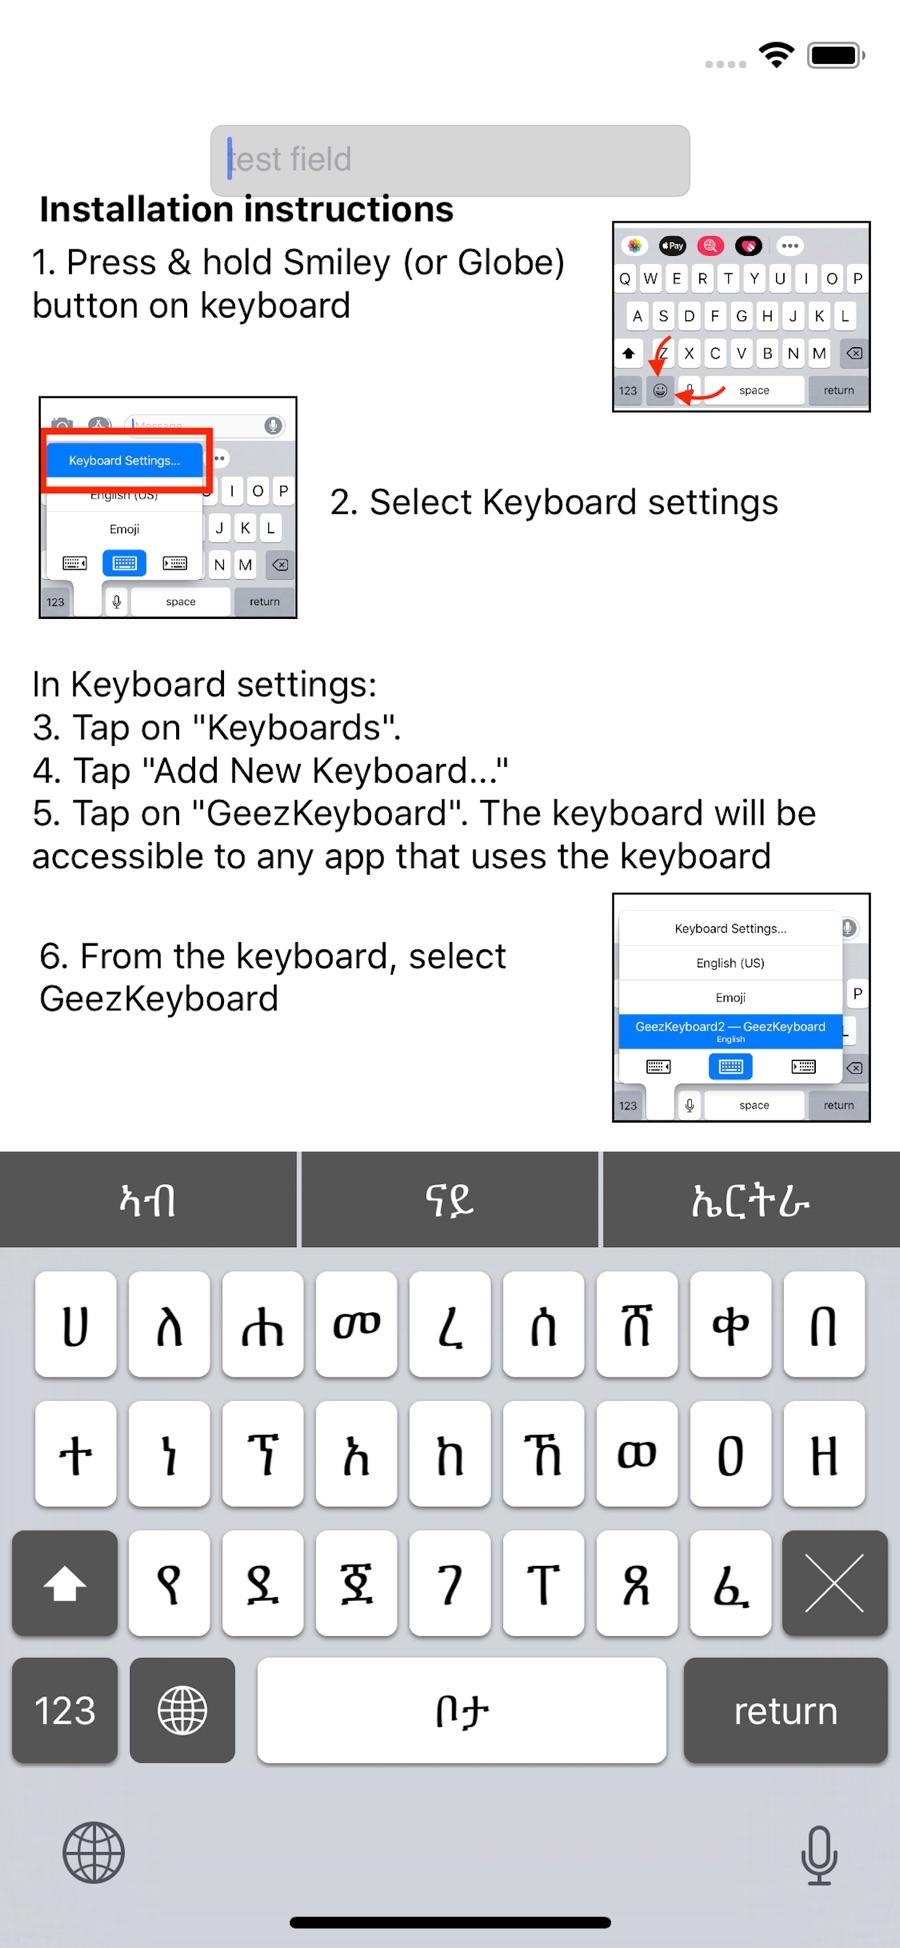 download amharic keyboard on mac